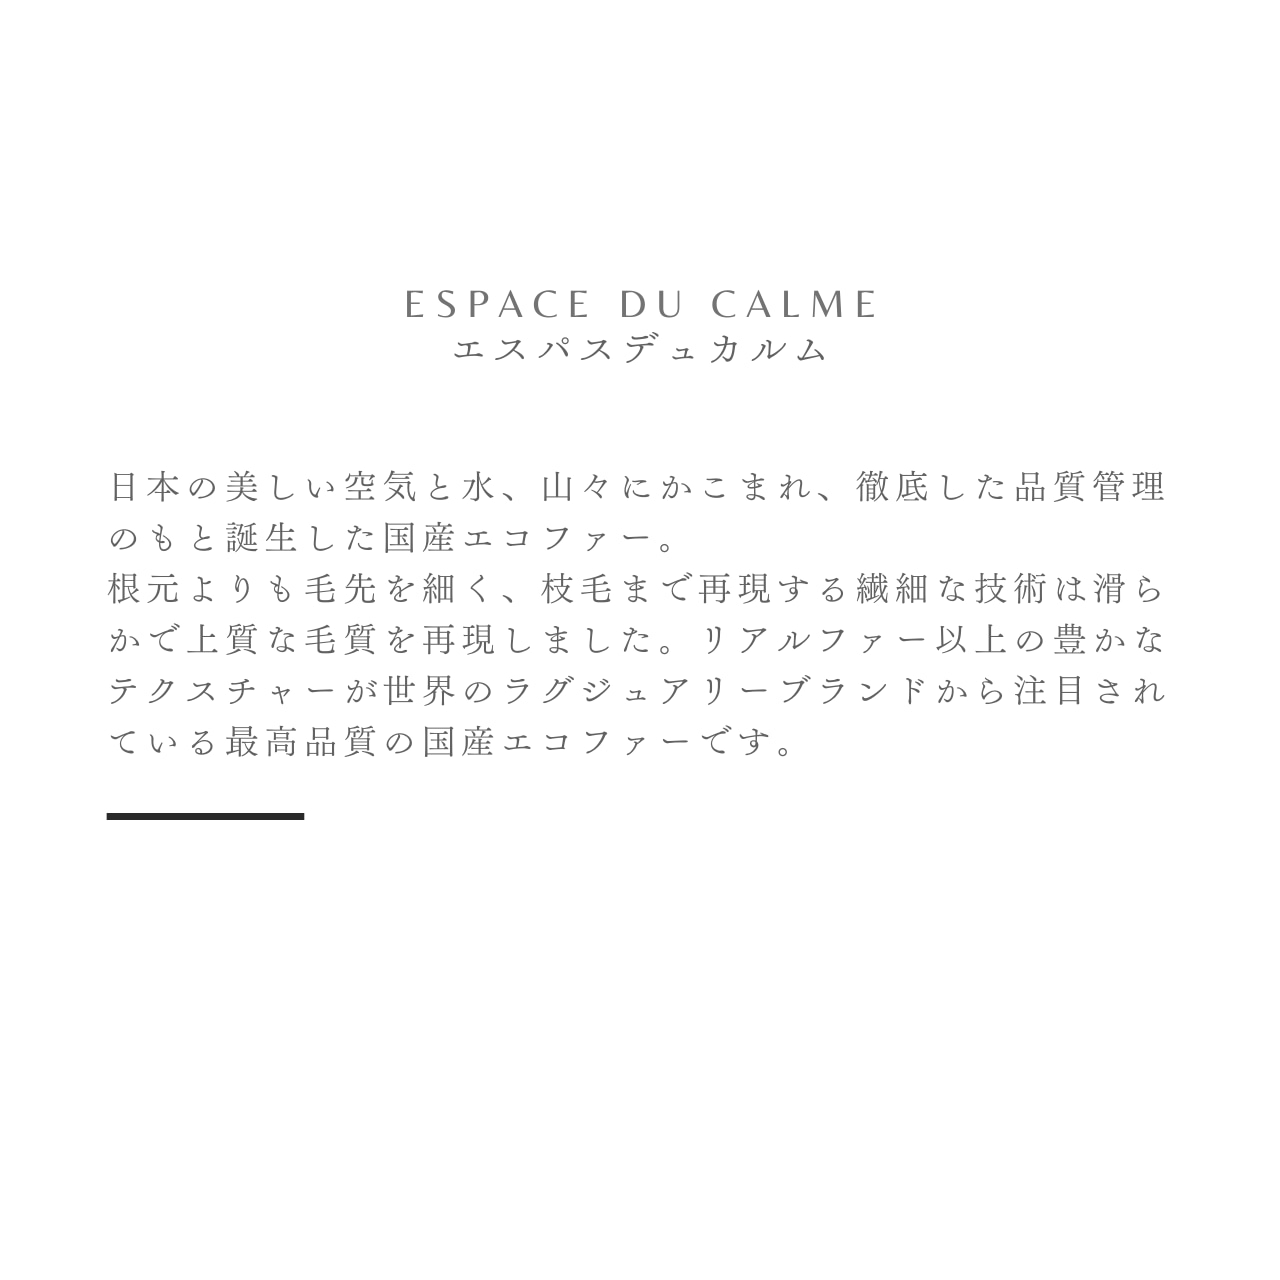 【TVで紹介】Espace du calme ファー クッションカバー40x40㎝ ラビット エコファー 日本製 ラグジュアリー